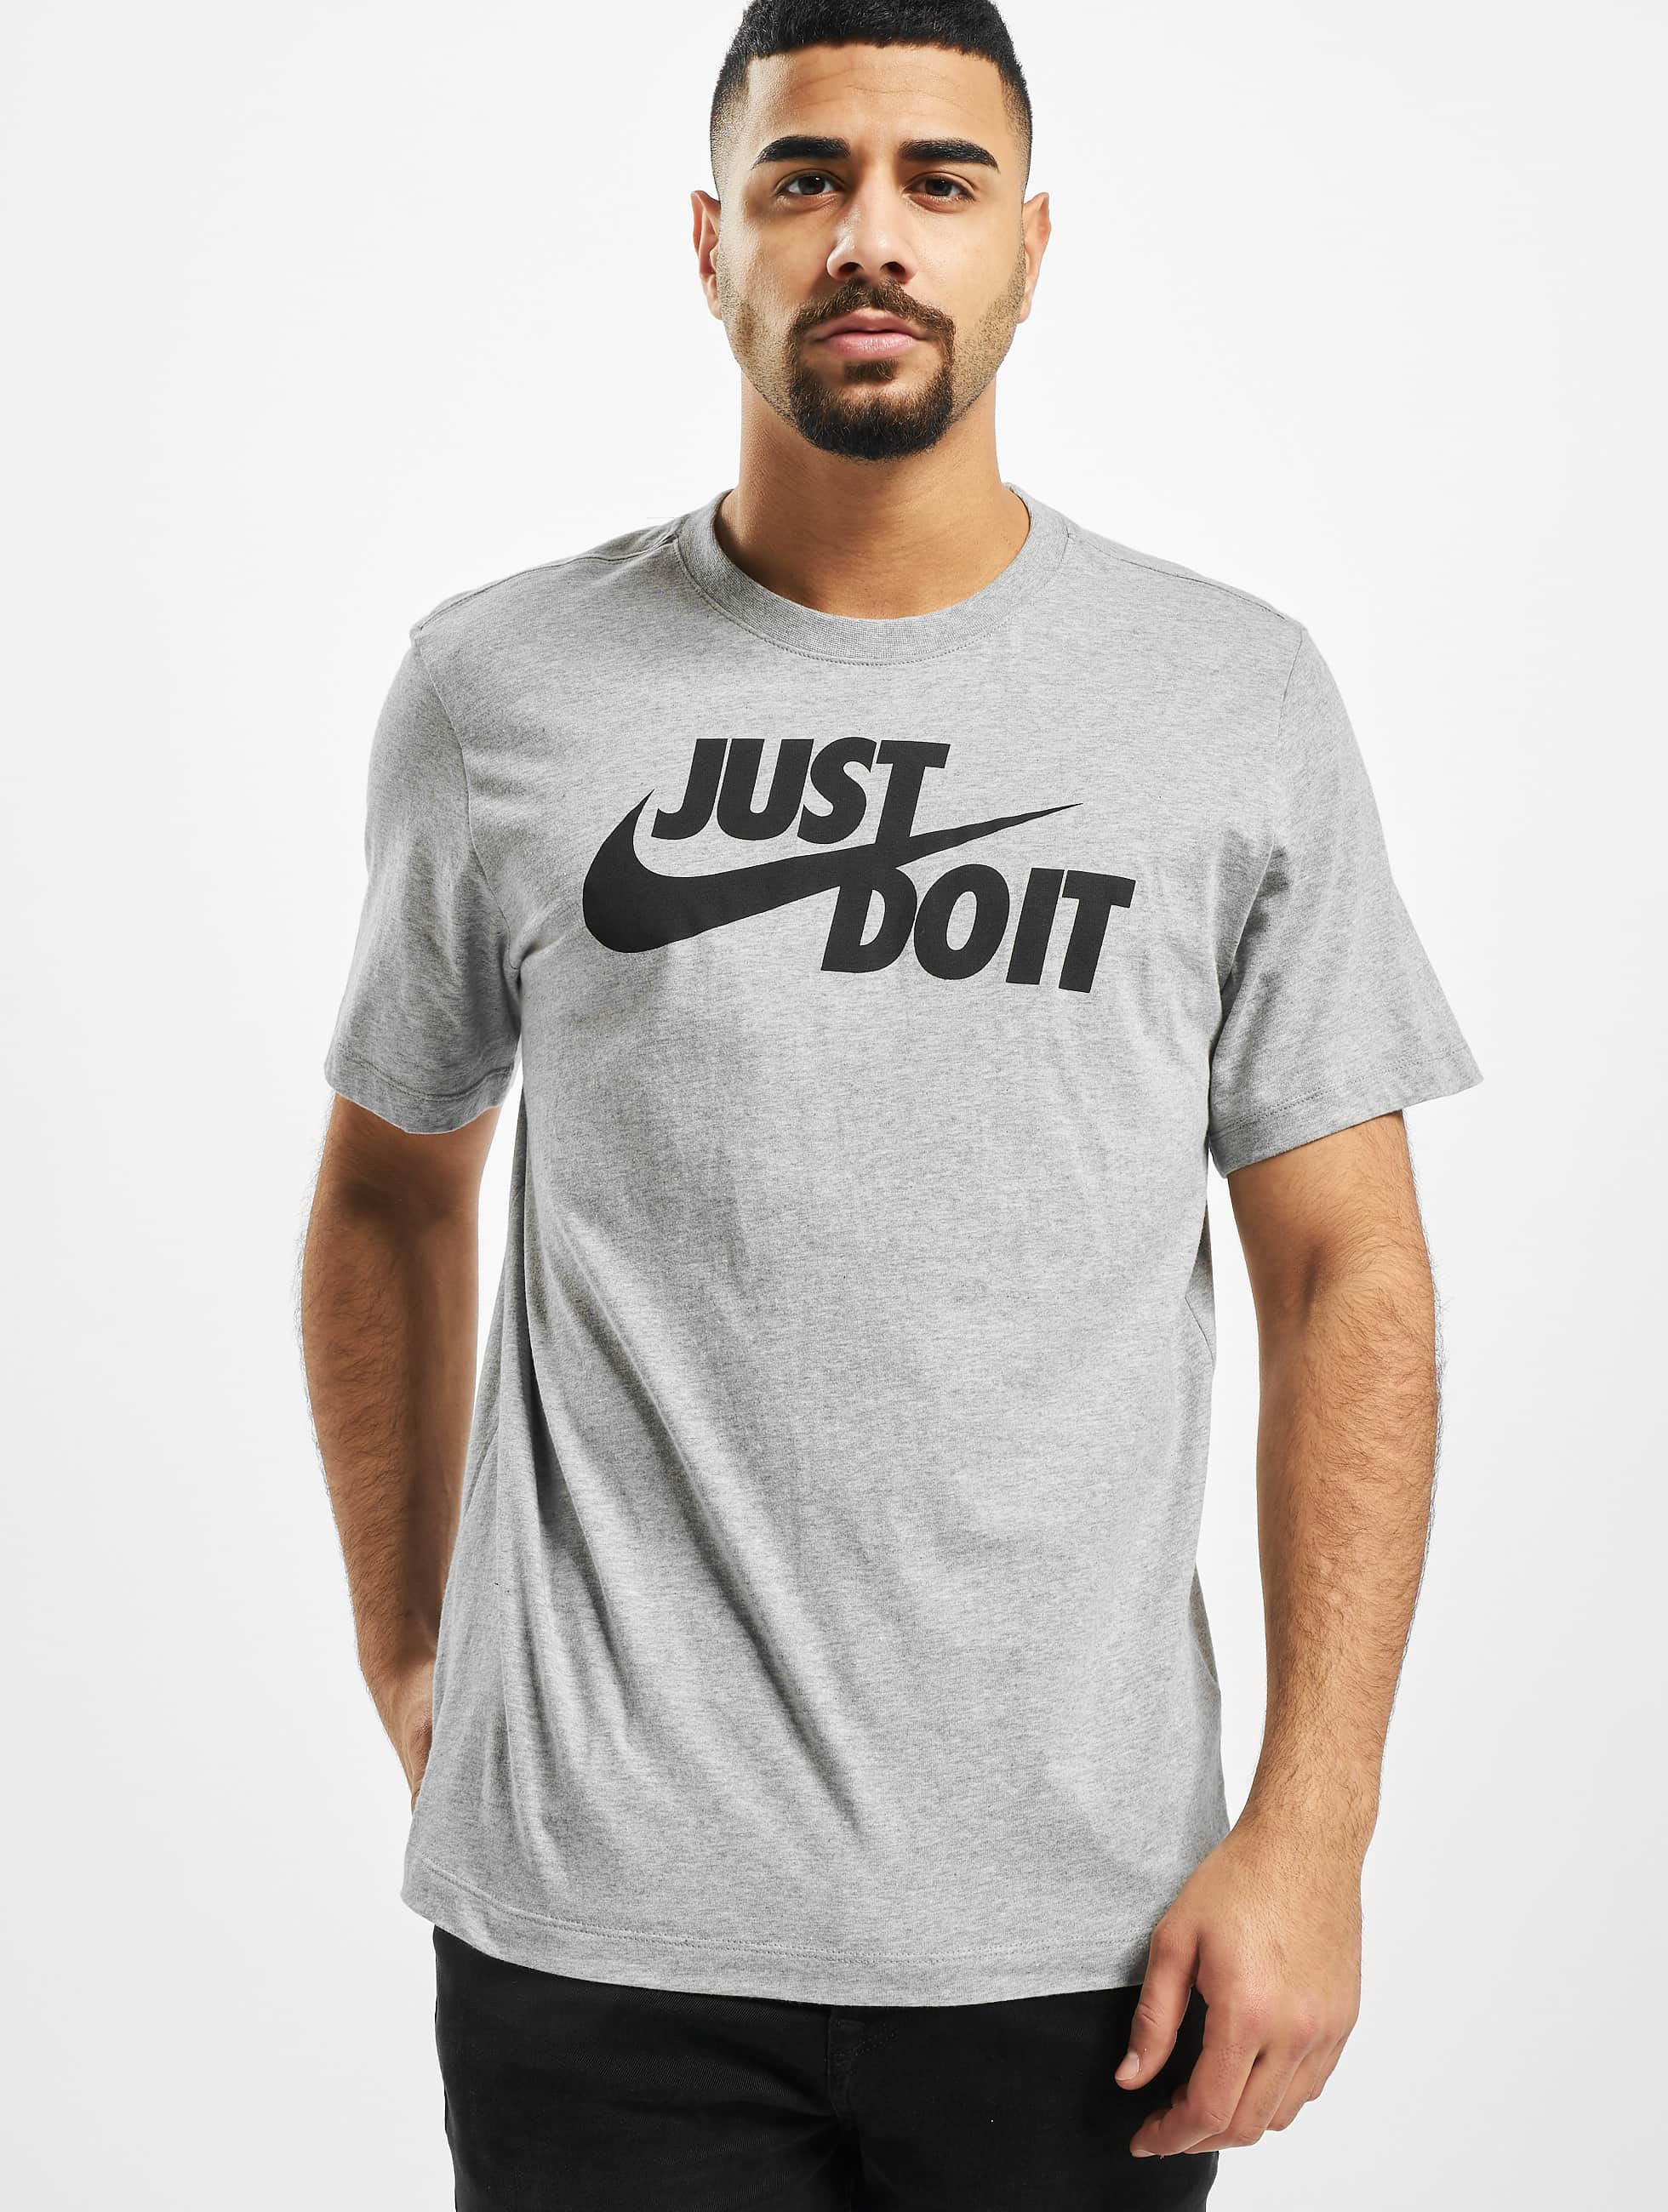 Wreed twee weken hoek Nike bovenstuk / t-shirt Just Do It Swoosh in grijs 737821